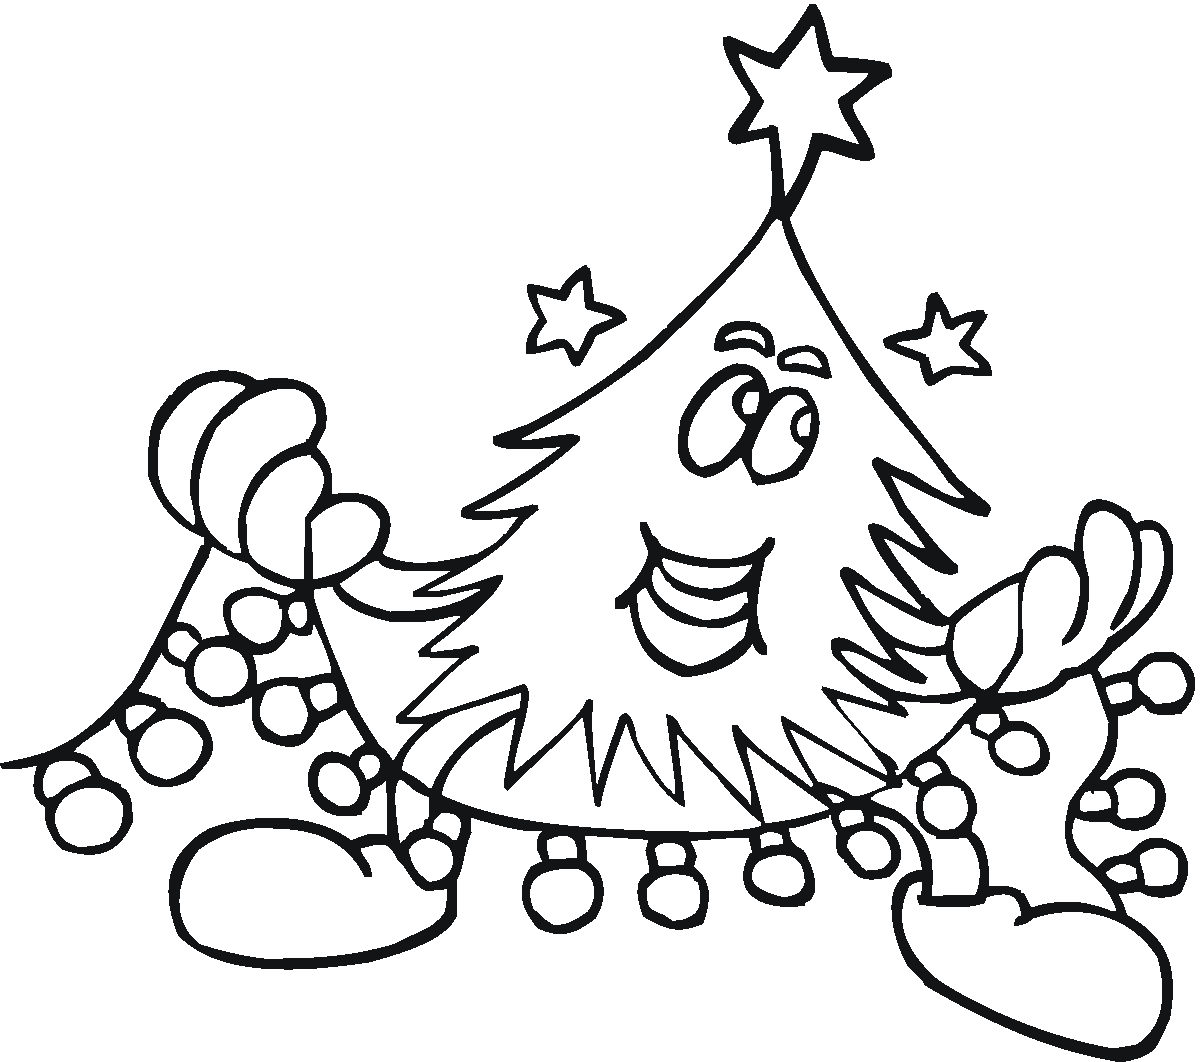 Dibujo para colorear: Arbol de Navidad (Objetos) #167620 - Dibujos para Colorear e Imprimir Gratis